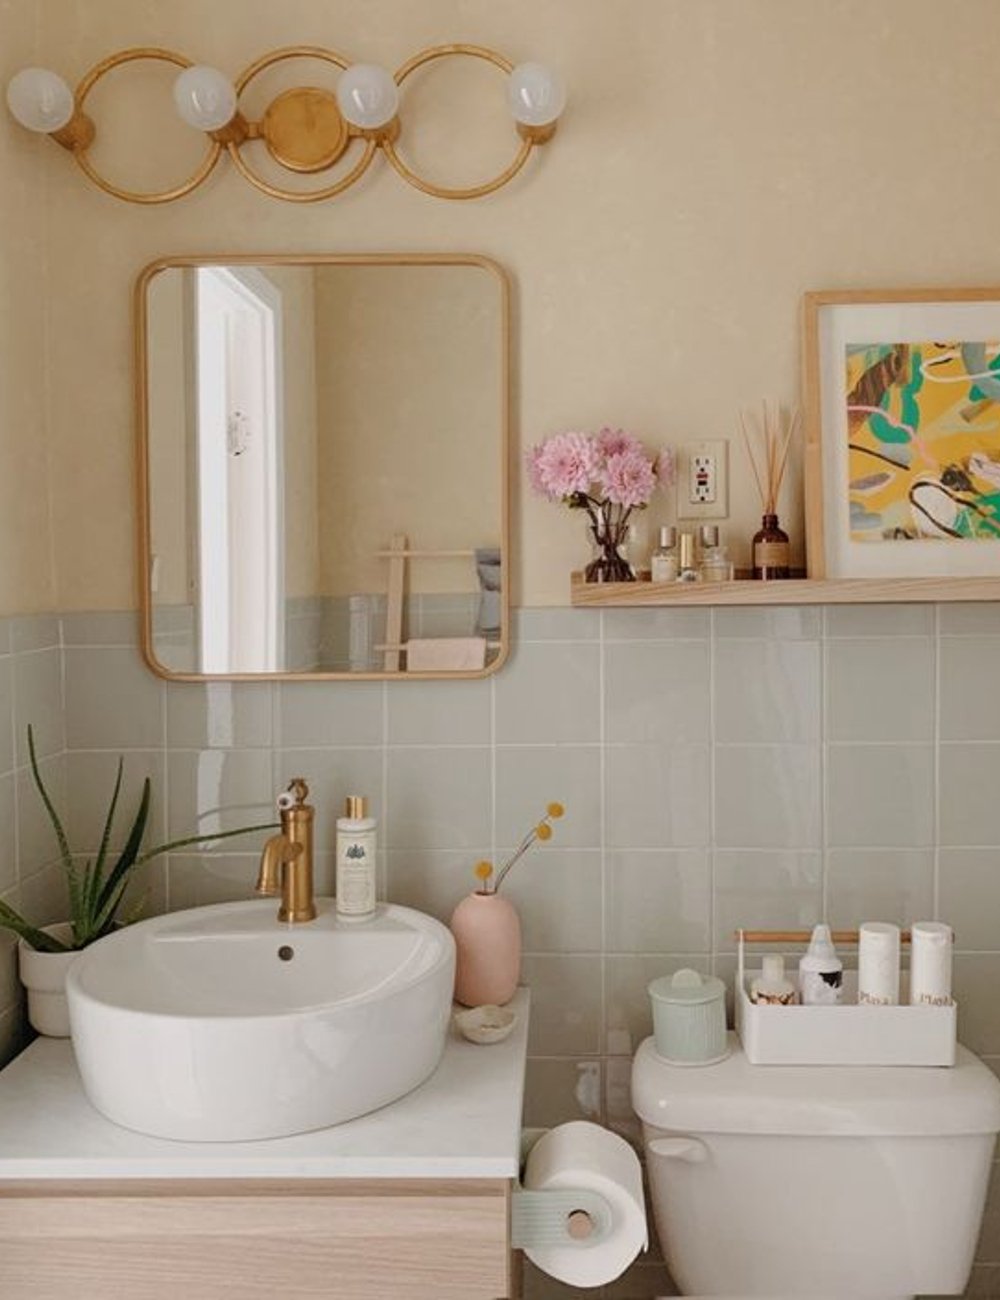 Decor - banheiro - dourado na decoração - dicas - casa - https://stealthelook.com.br